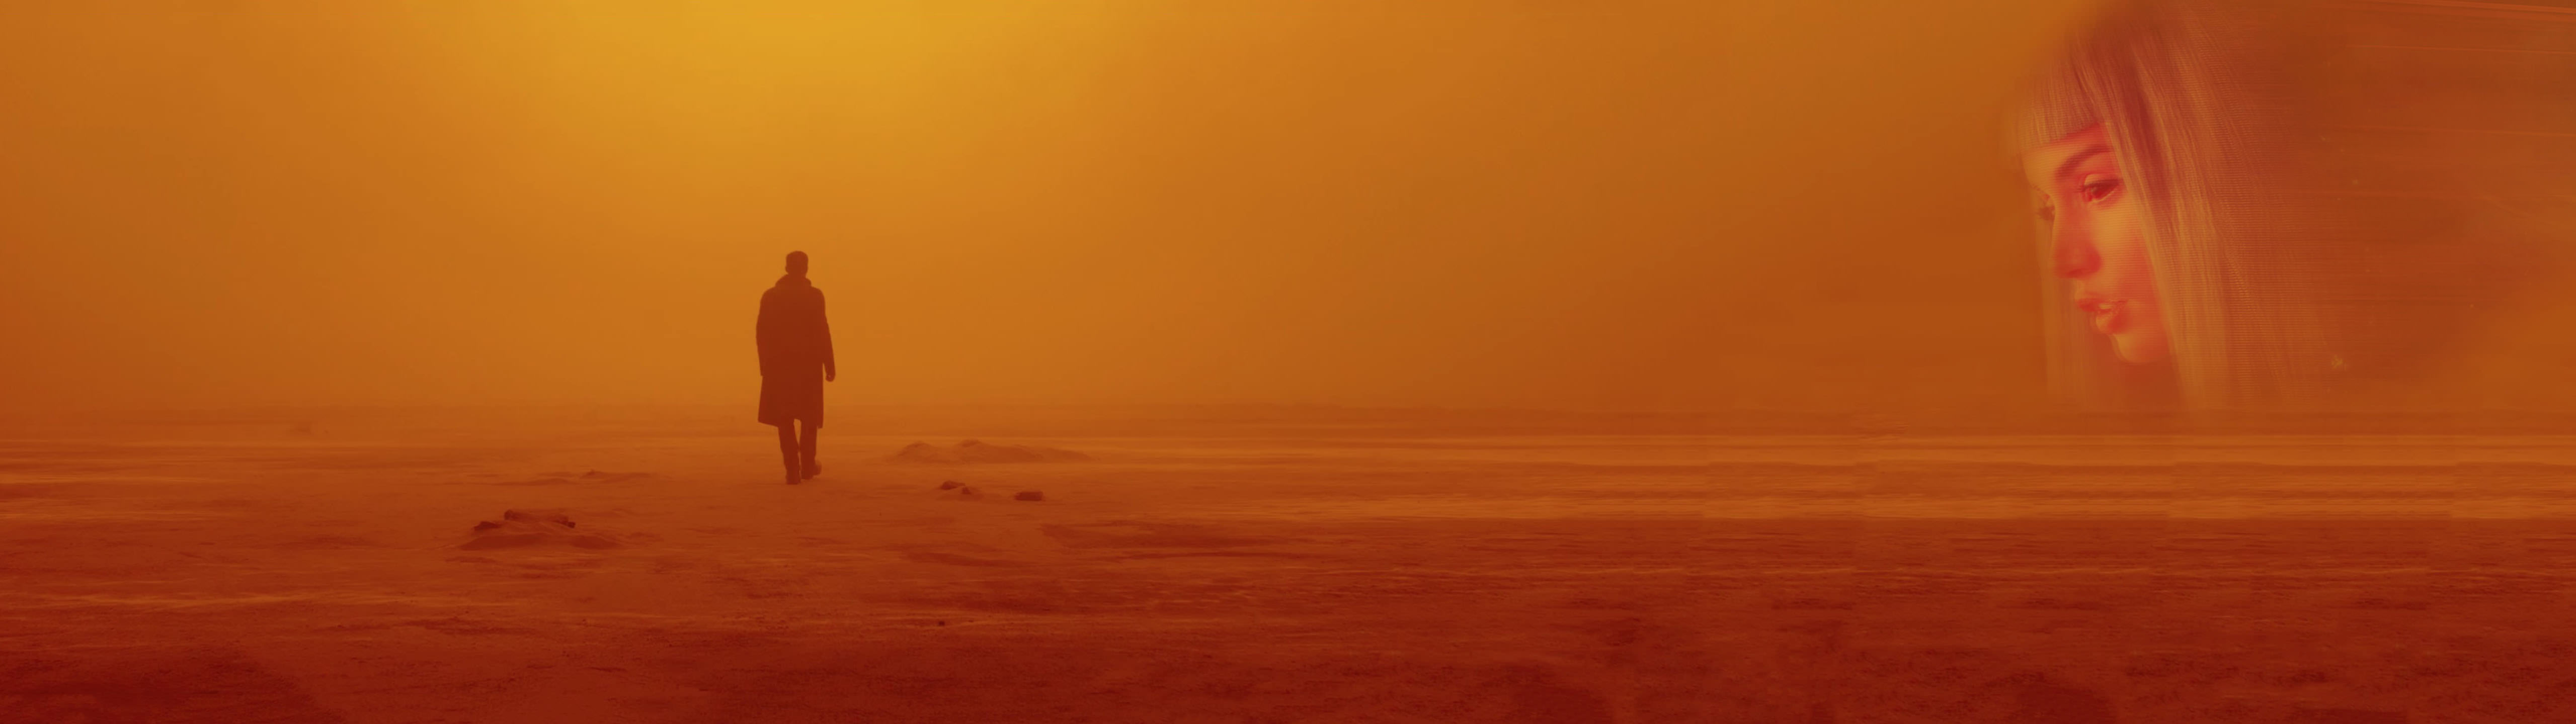 hintergrundbild mit zwei monitoren,horizont,himmel,morgen,sand,wüste